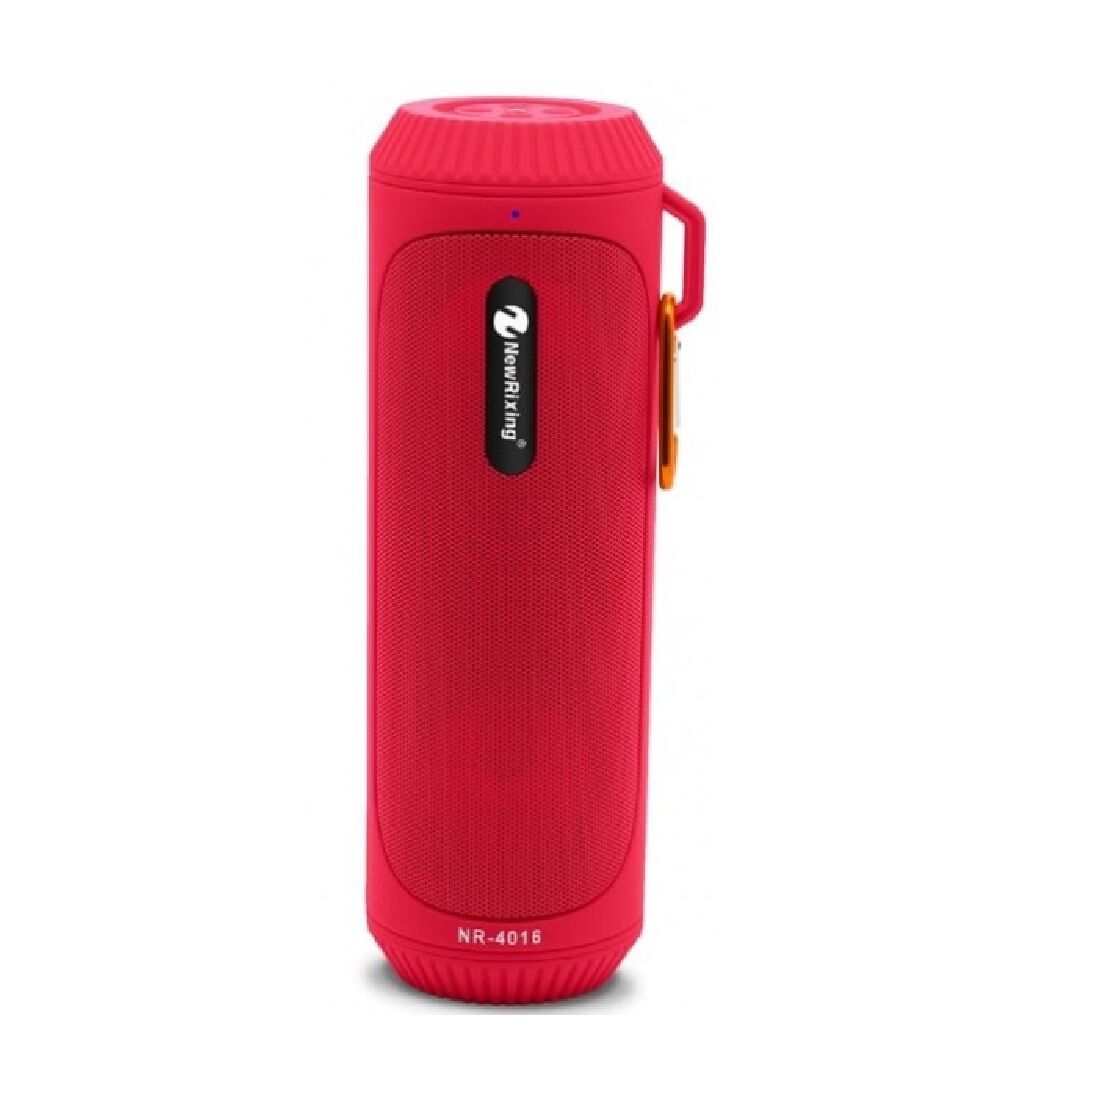 Boxa portabila Wireless cu Lanterna, NR-4016 cu Bluetooth, TF/SD Card, Aux-in, Radio FM, Rosu